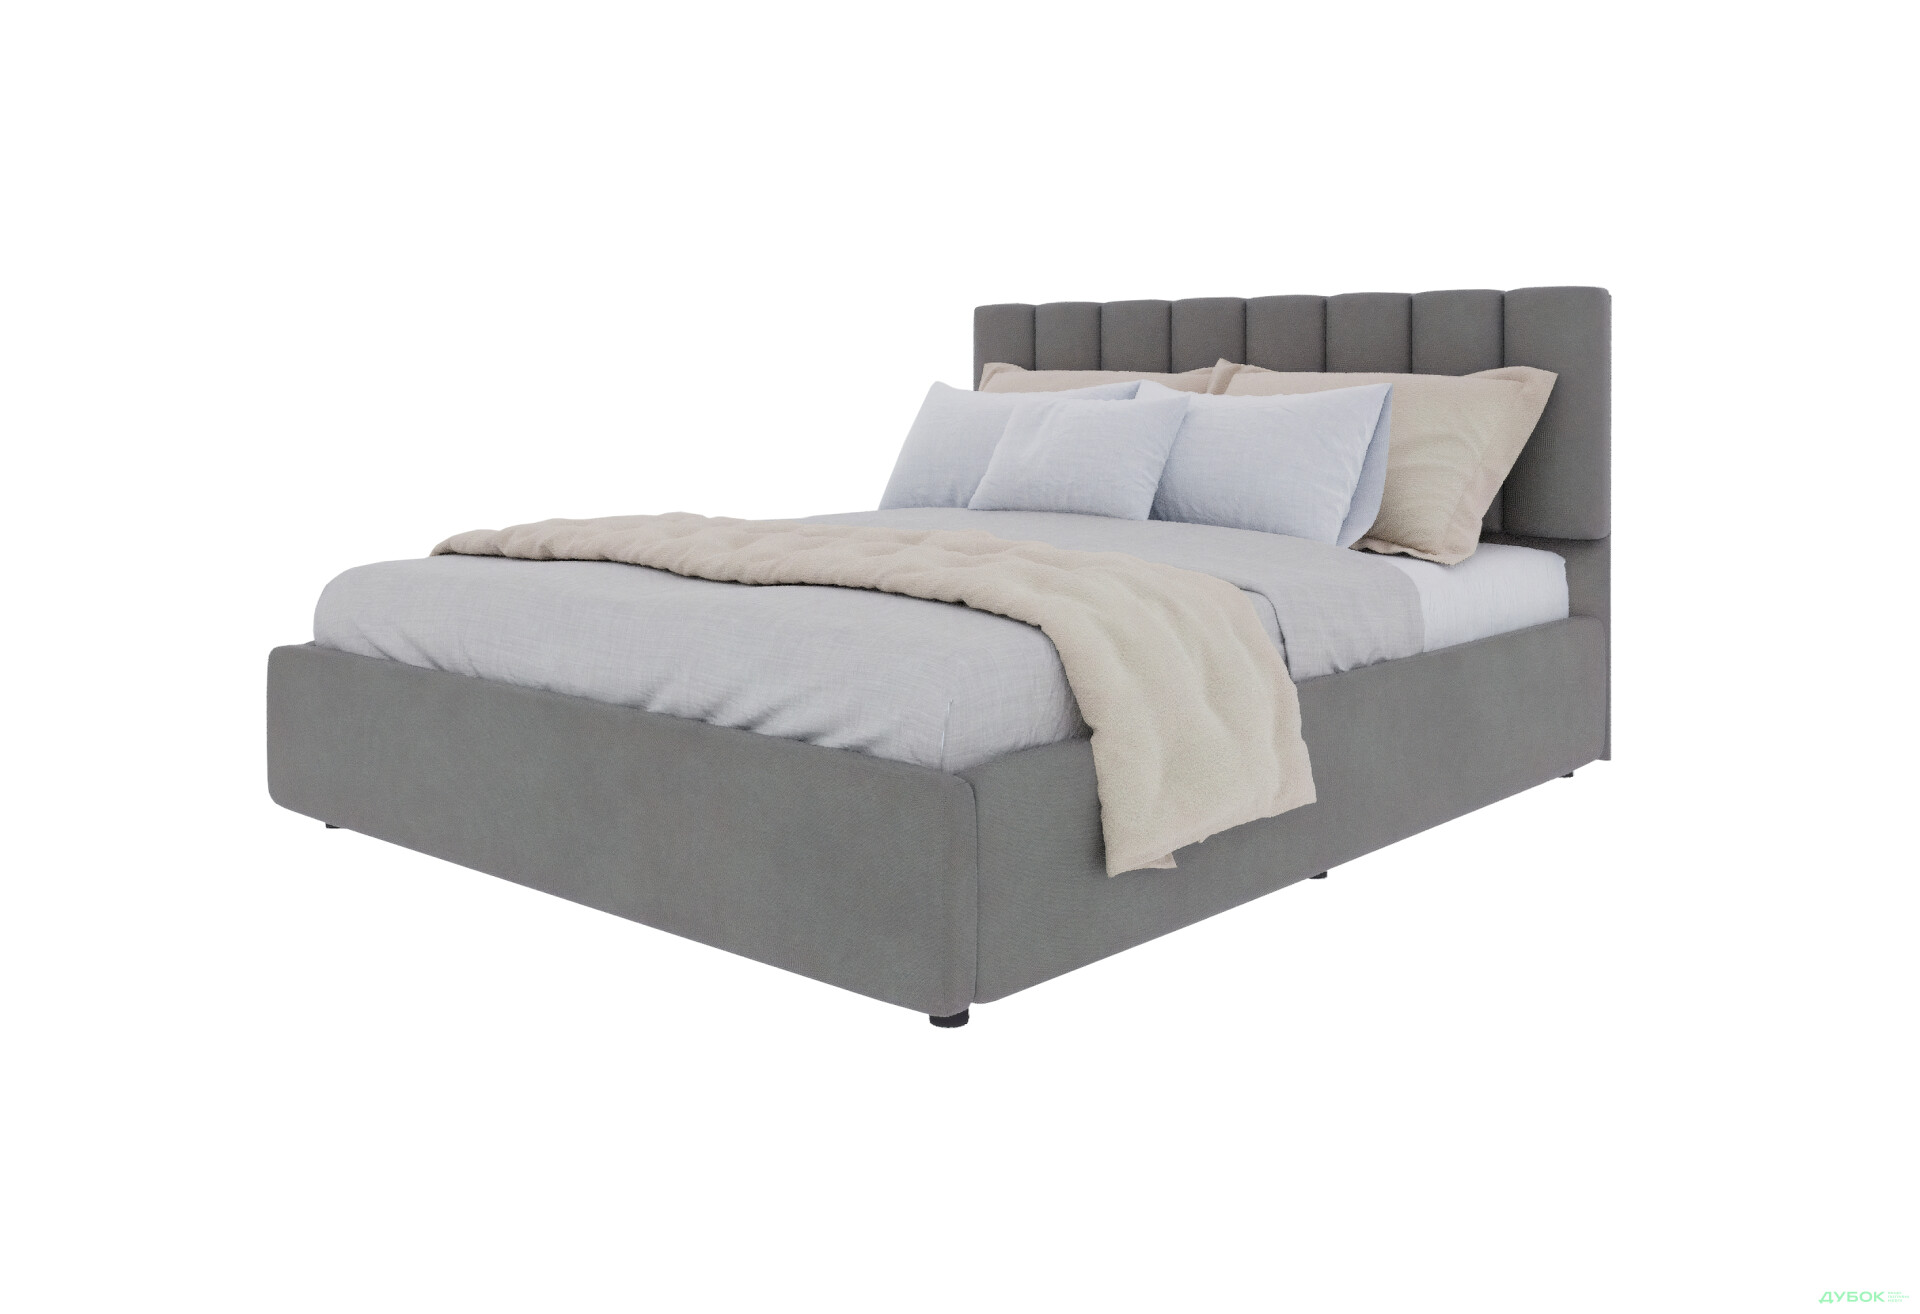 Фото 1 - Ліжко-подіум UMa Монро 160х200 см підйомне, сіро-коричневе (Fancy 96)